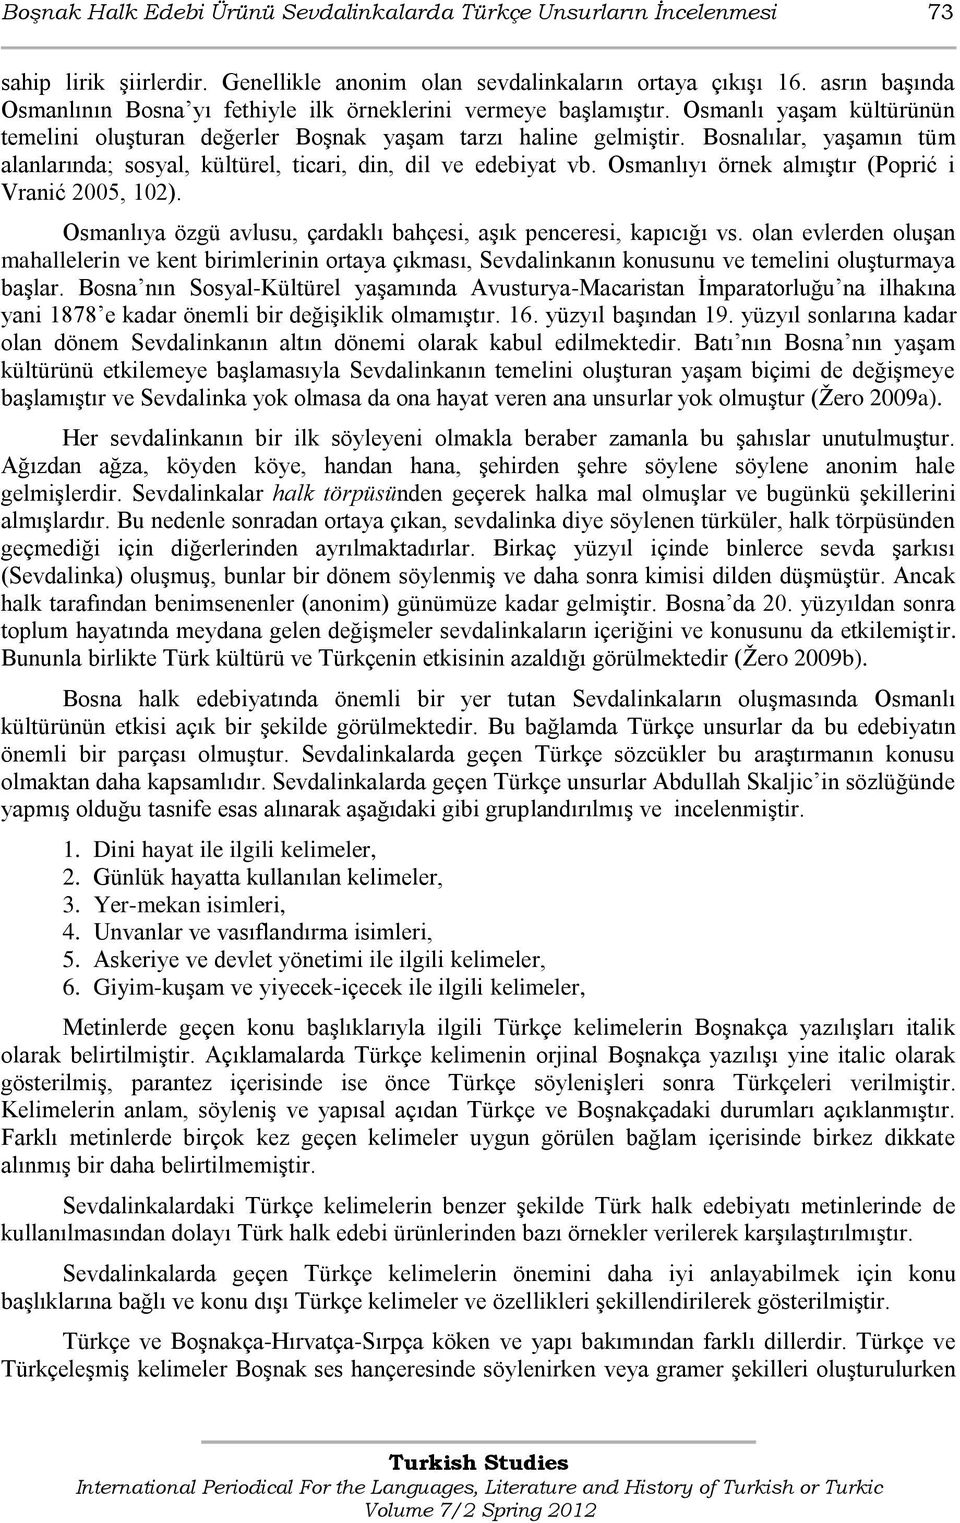 Bosnalılar, yaşamın tüm alanlarında; sosyal, kültürel, ticari, din, dil ve edebiyat vb. Osmanlıyı örnek almıştır (Popriš i Vraniš 2005, 102).